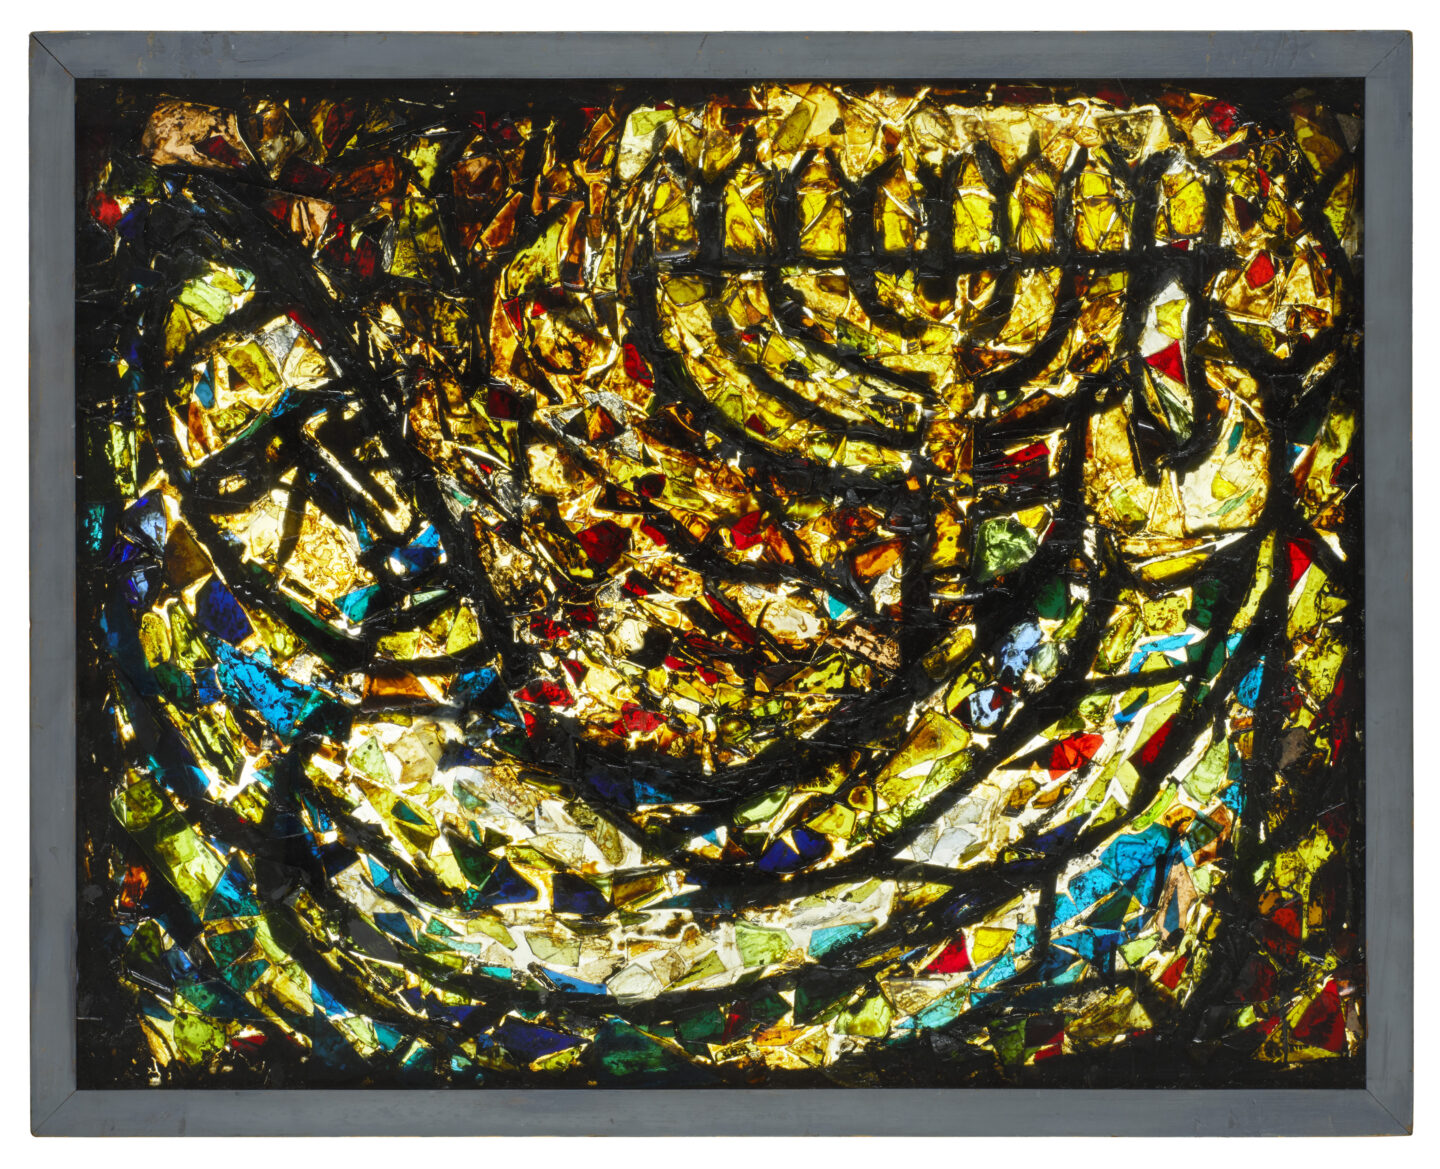 Glasmosaik von Samson Schames, Chanukka Leuchter, Eine Kabinettausstellung im Jüdischen Museum Frankfurt würdigt Samson Schames 